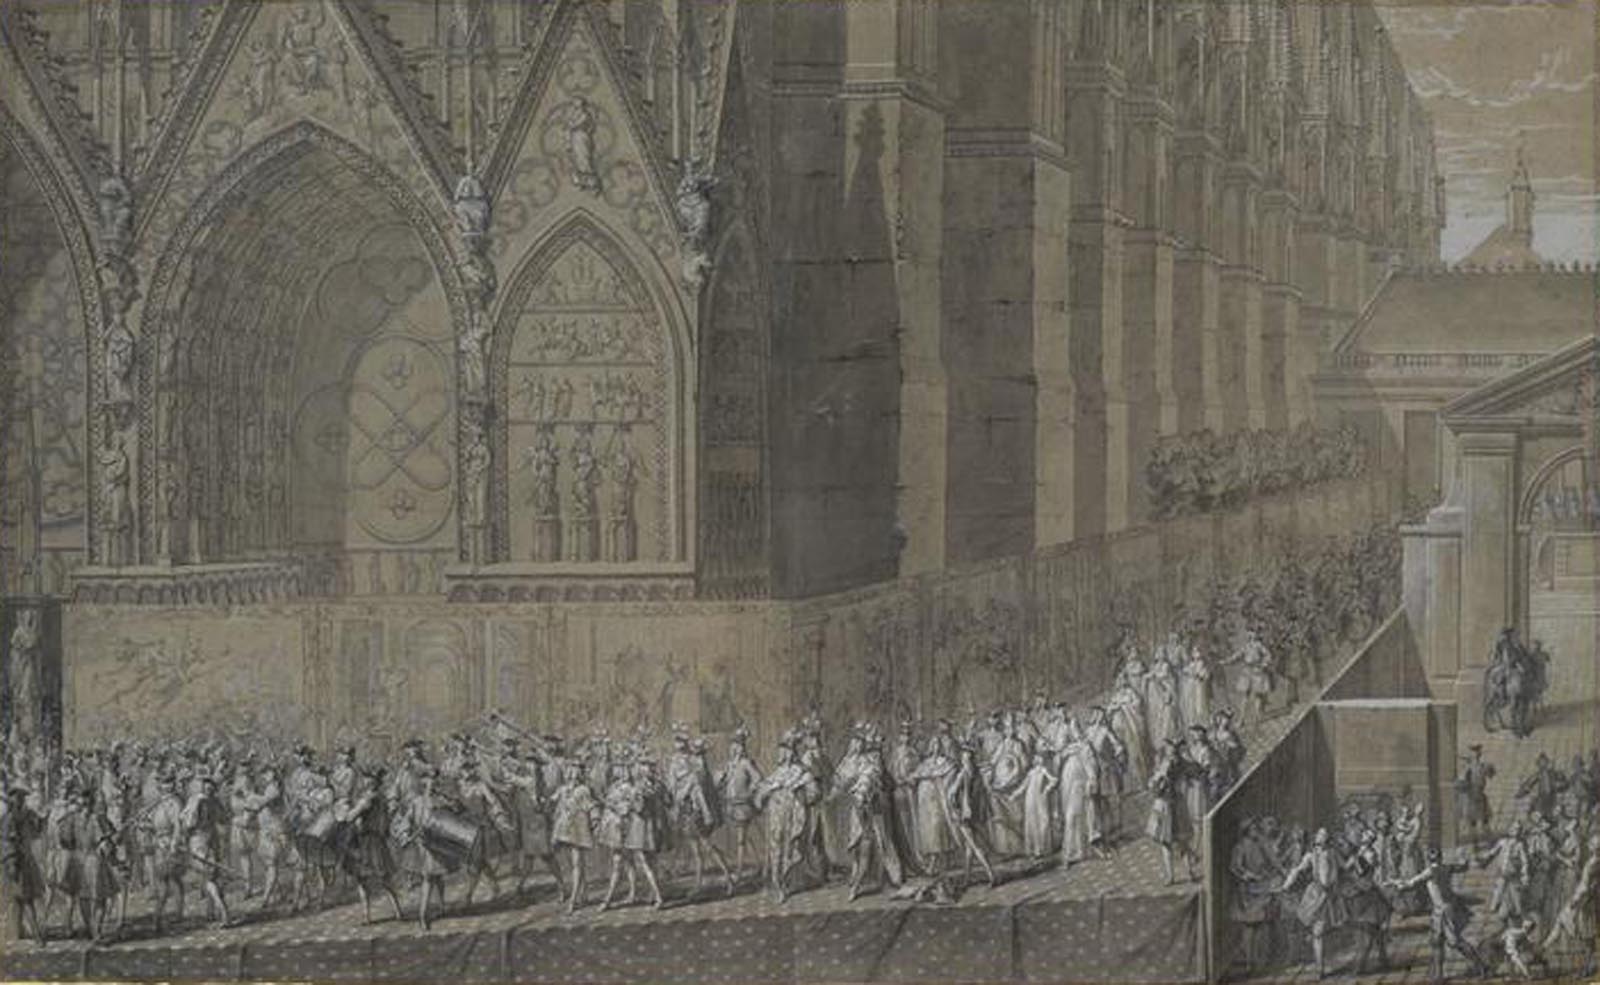 Représentation de Louis XV se rendant dans la cathédrale de Reims pour y être sacré roi de France